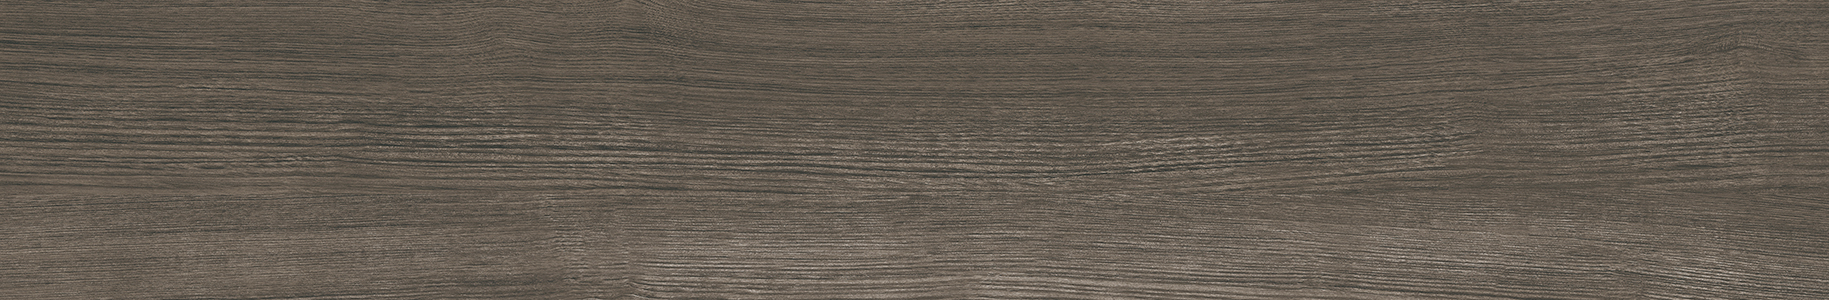 EW1522-15 川島織物セルコン 床タイル エグザウッド アンゴラアッシュ 川島織物セルコン フロアタイル